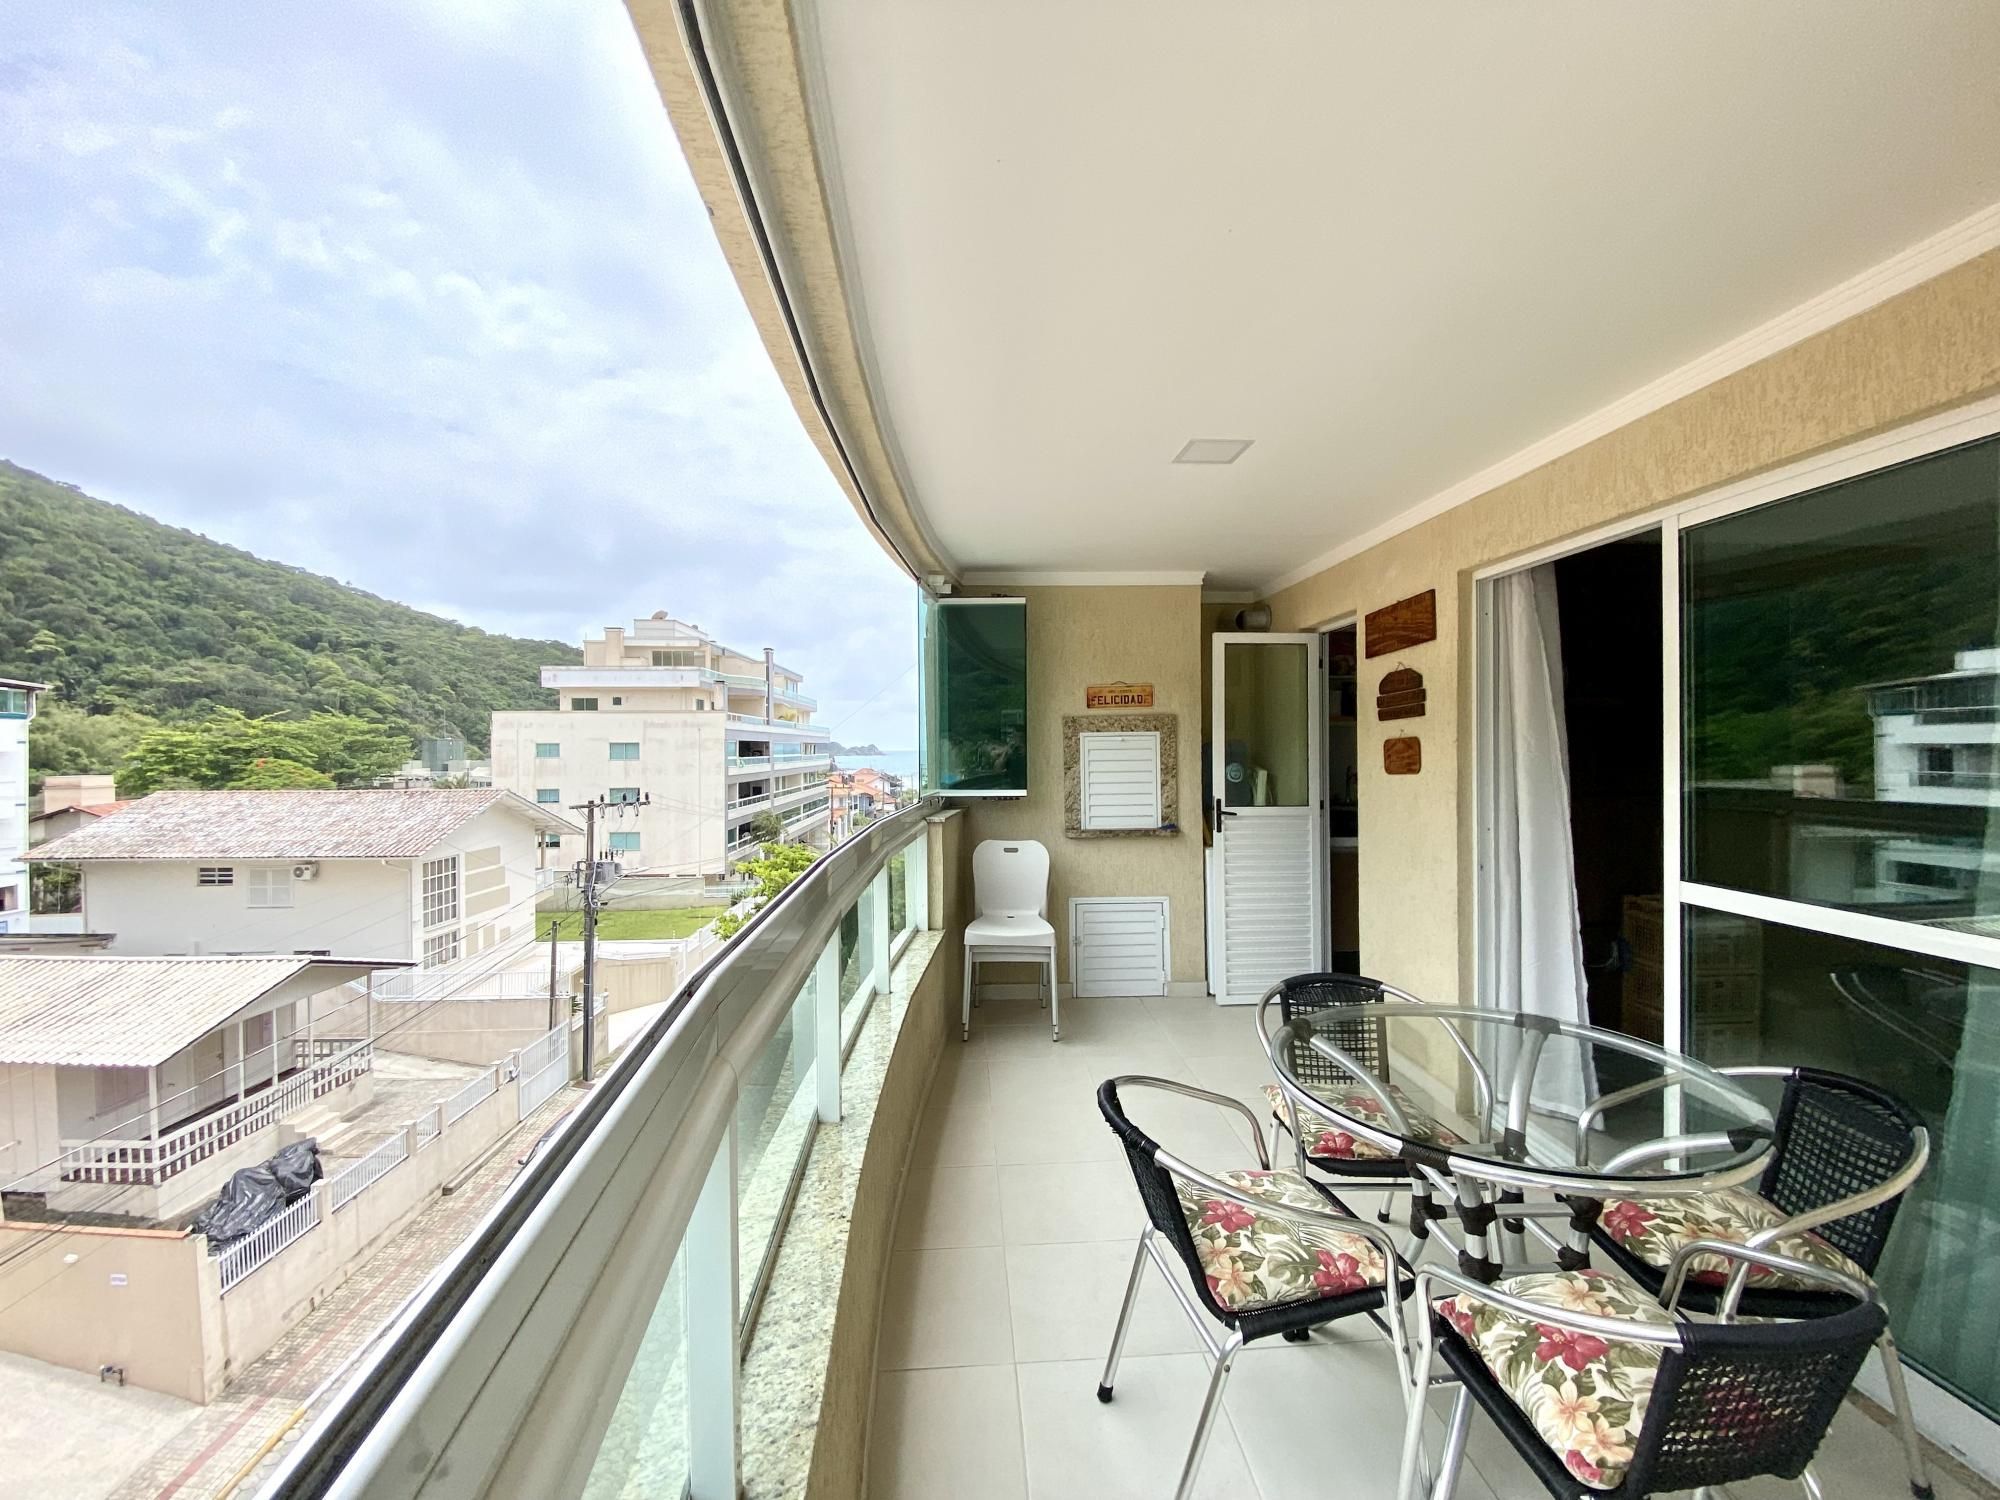 Apartamento com 3 Dormitórios para alugar, 100 m² por R$ 400,00